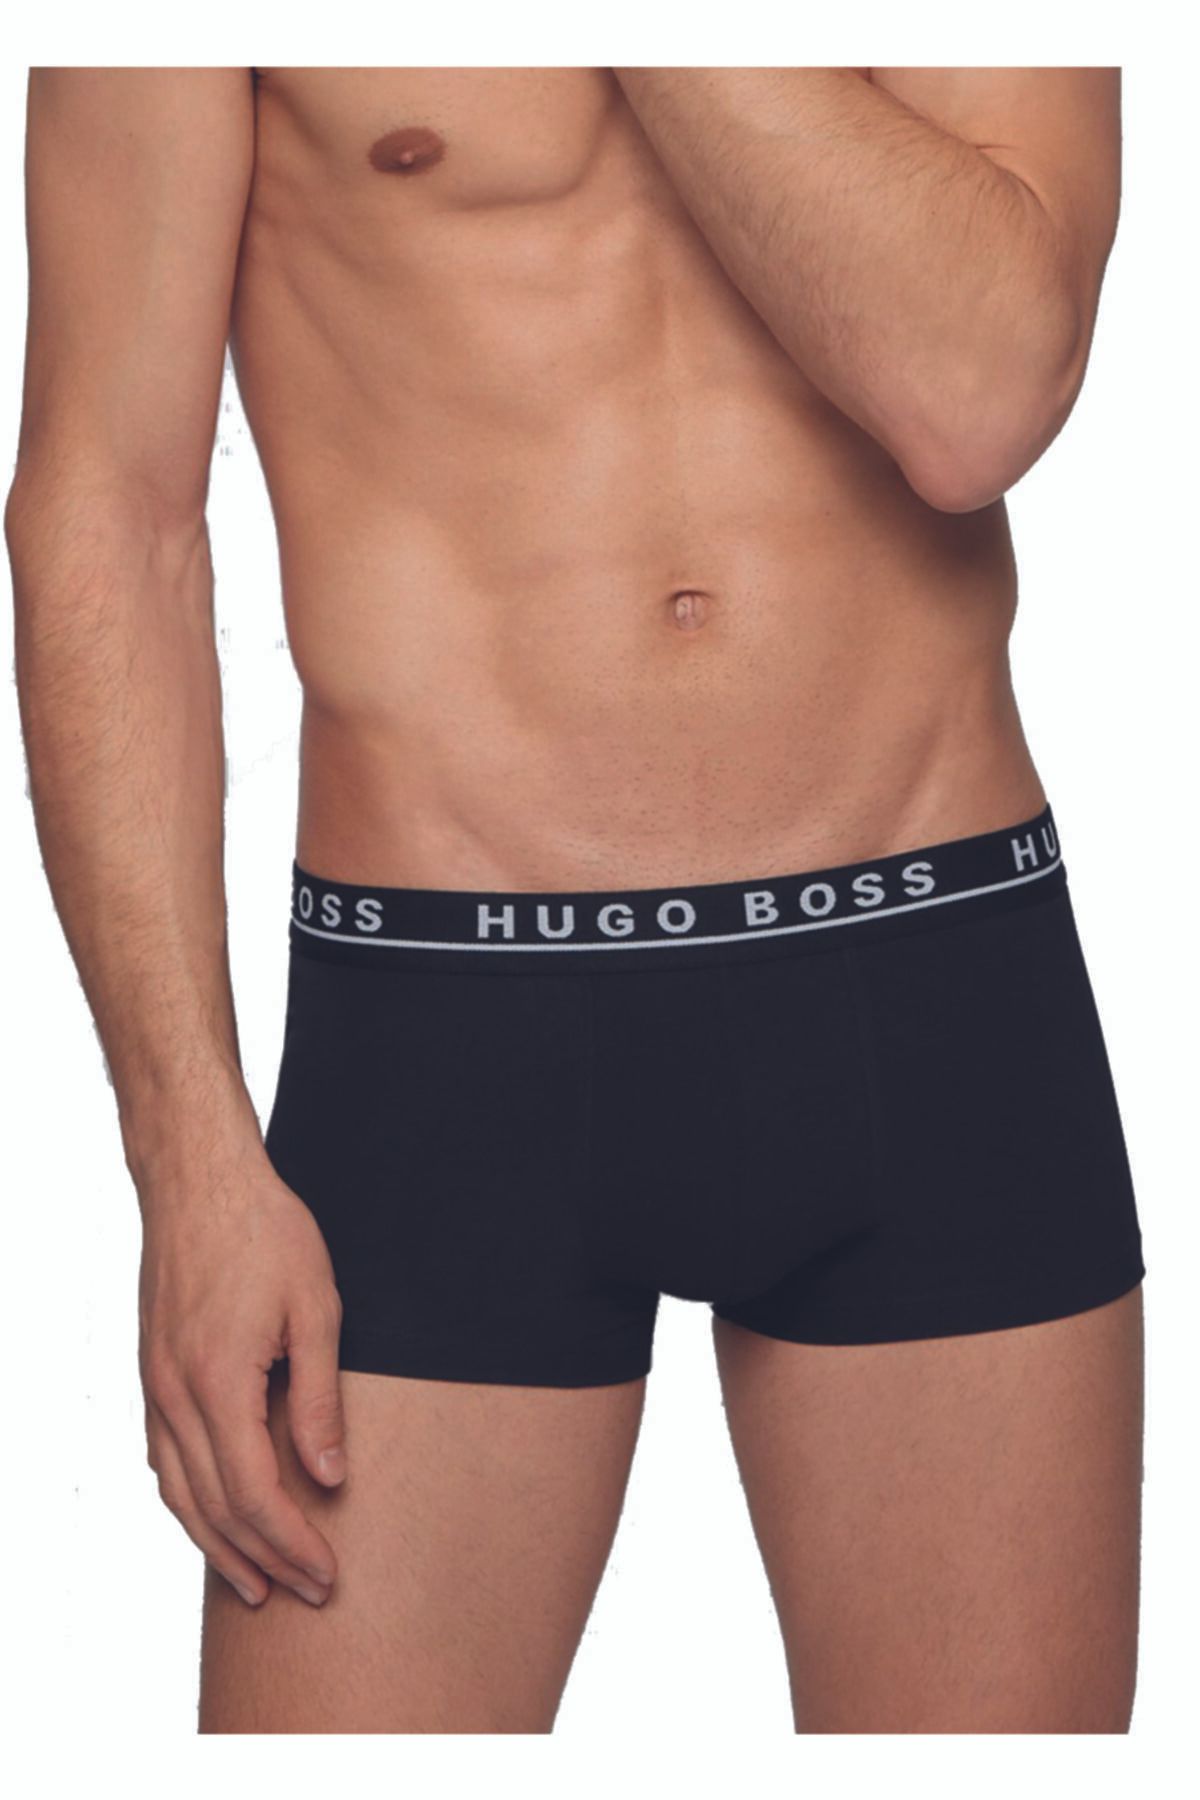 Hugo Boss Ultra Soft Modal Boxer Black 50236770-001 at